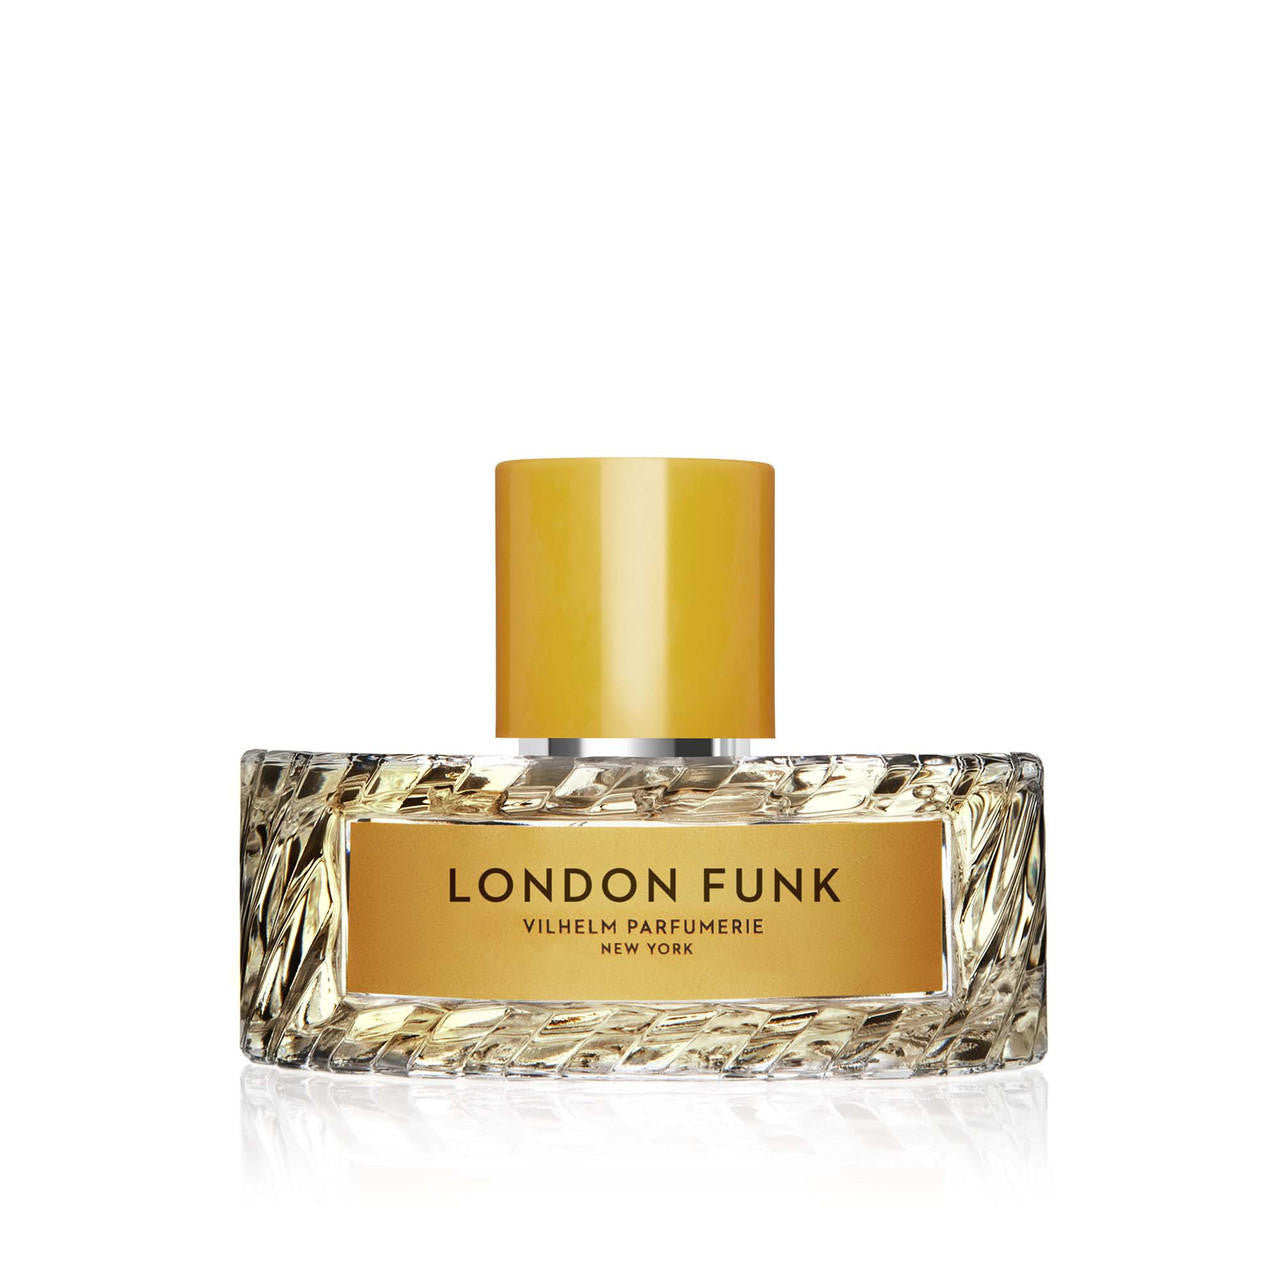  Vilhelm Parfumerie LONDON FUNK Eau de Parfum 